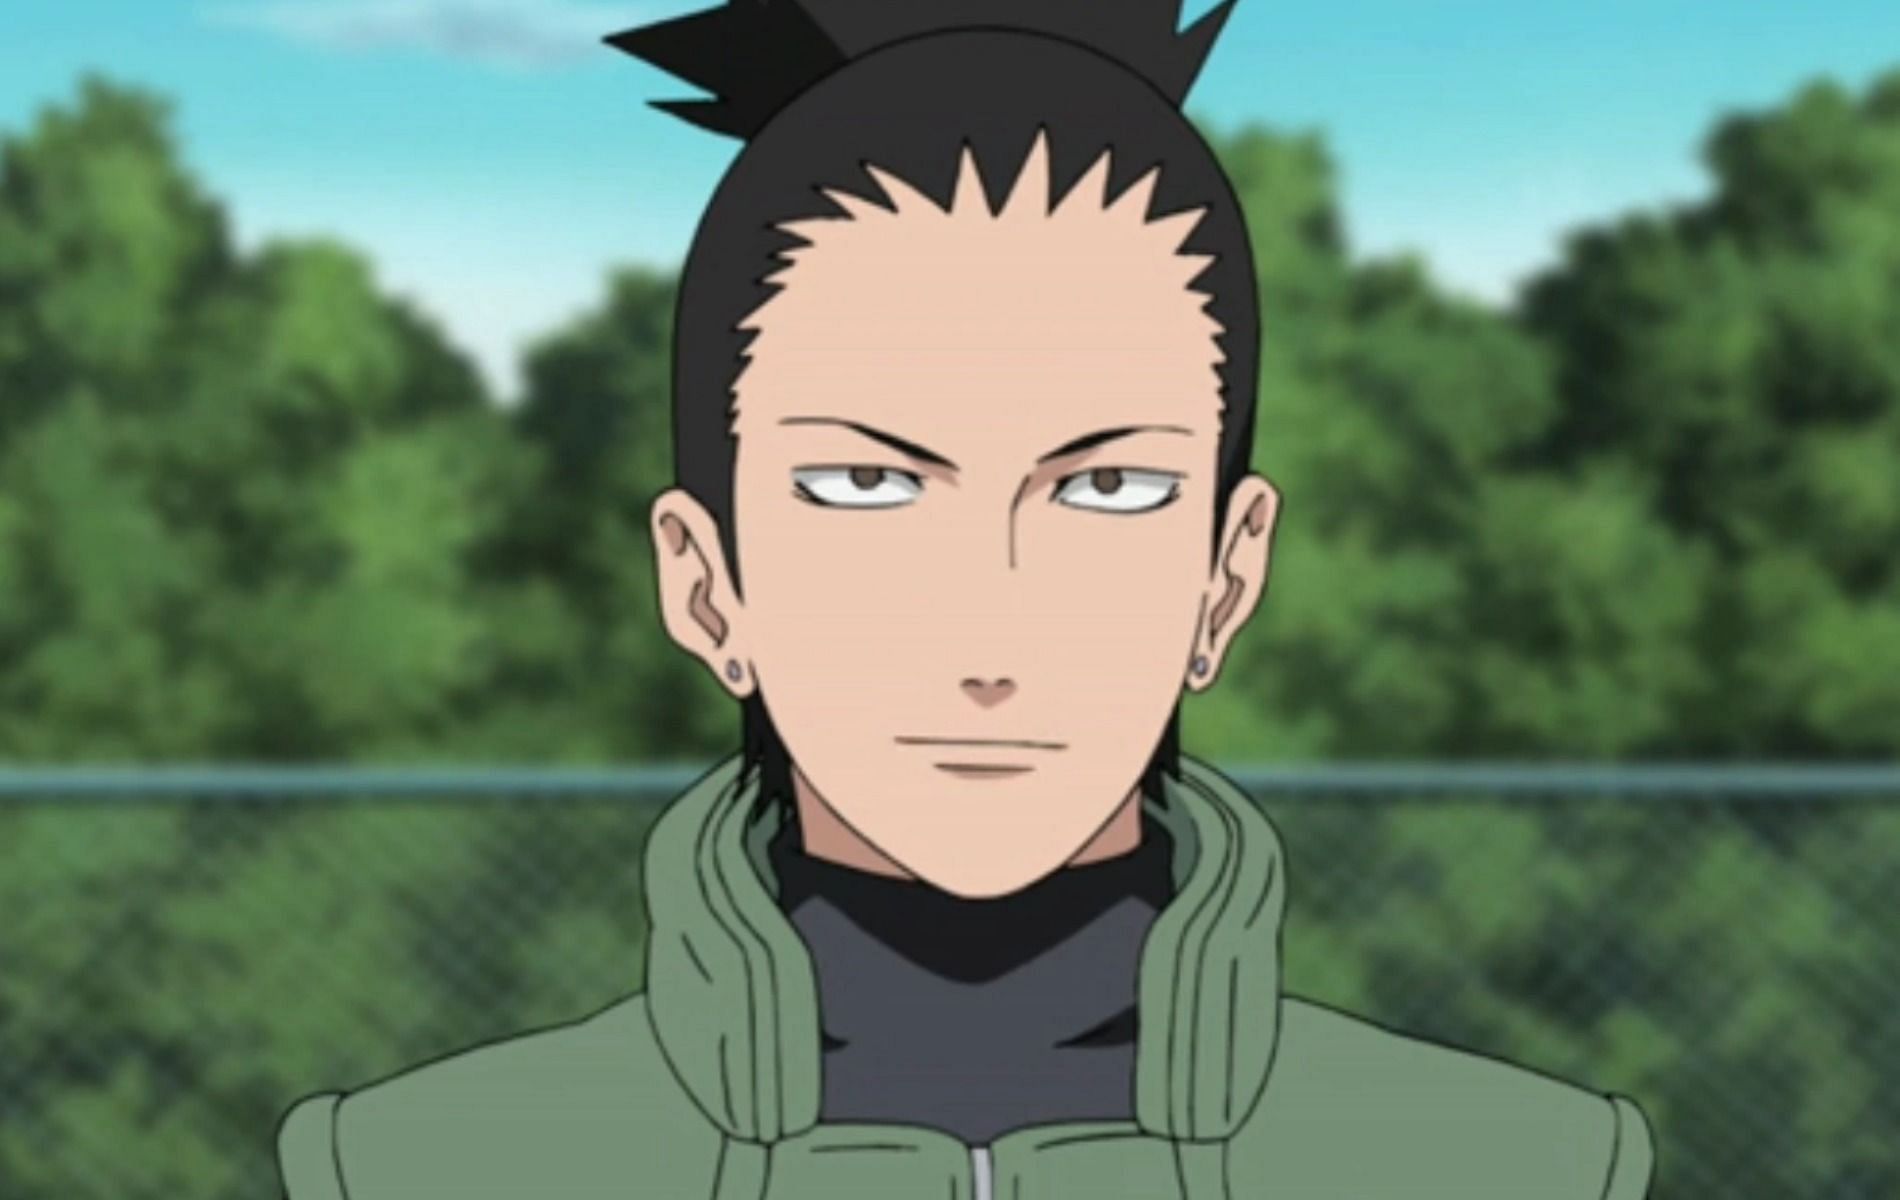 Shikamaru was a Sigma male (Image via Naruto)